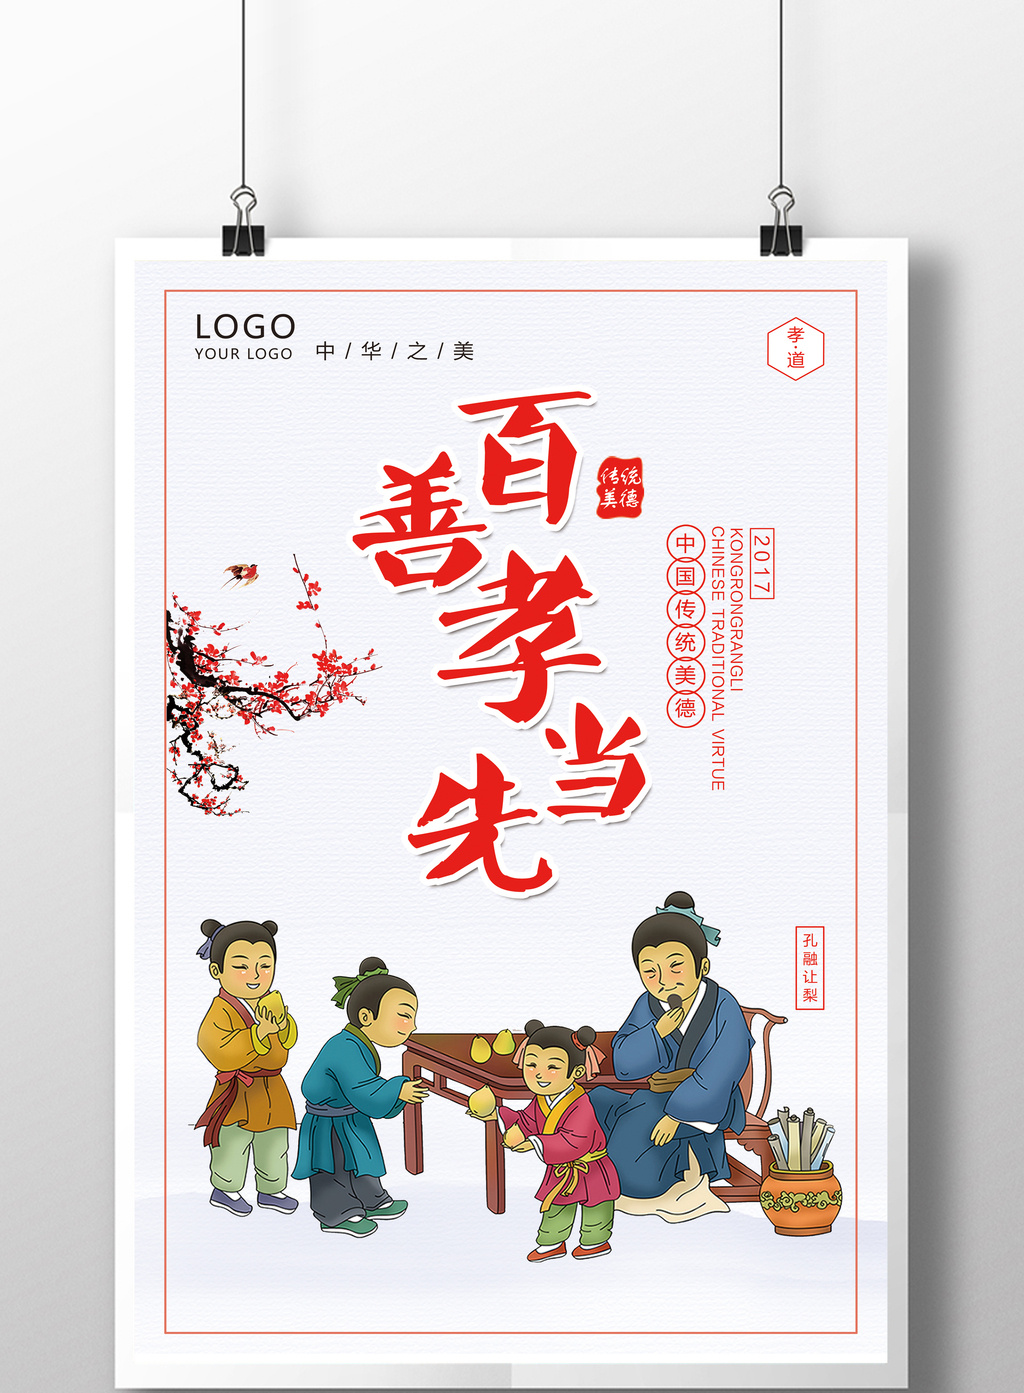 中国风百善孝为先创意海报设计素材免费下载,本次作品主题是广告设计